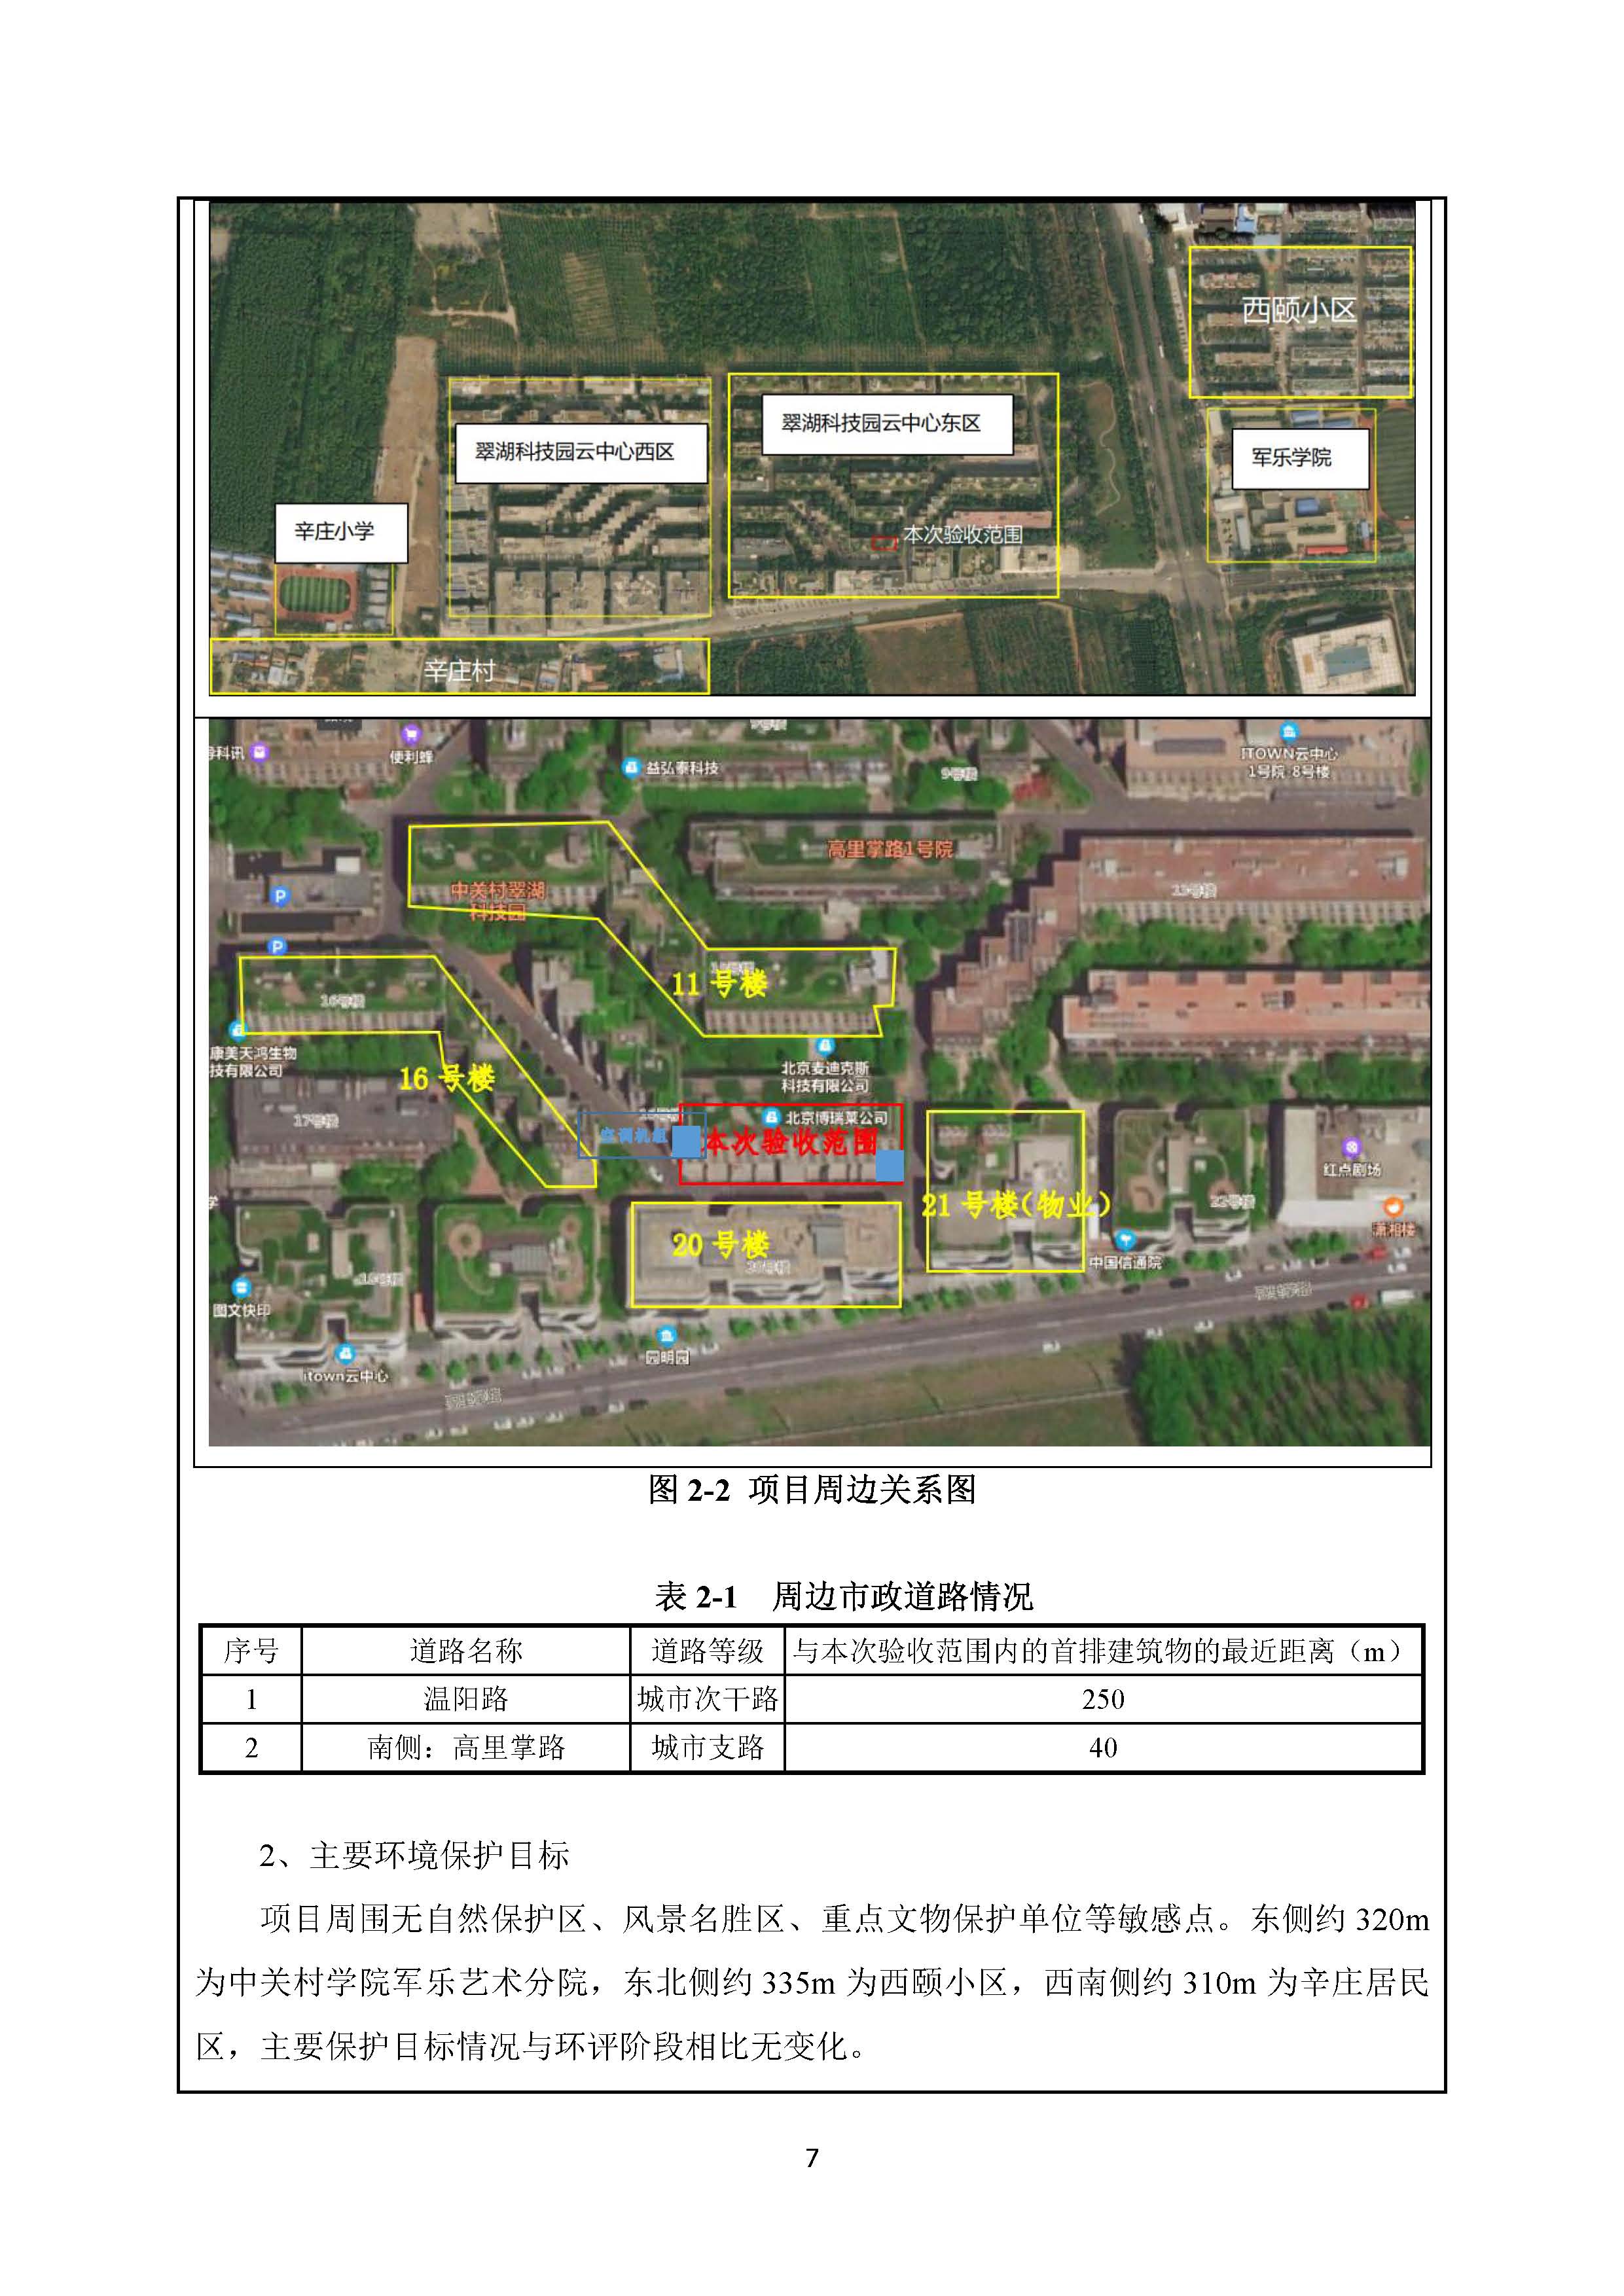 北京博瑞莱智能科技集团有限公司项目竣工环境保护验收监测报告全本公示(图11)